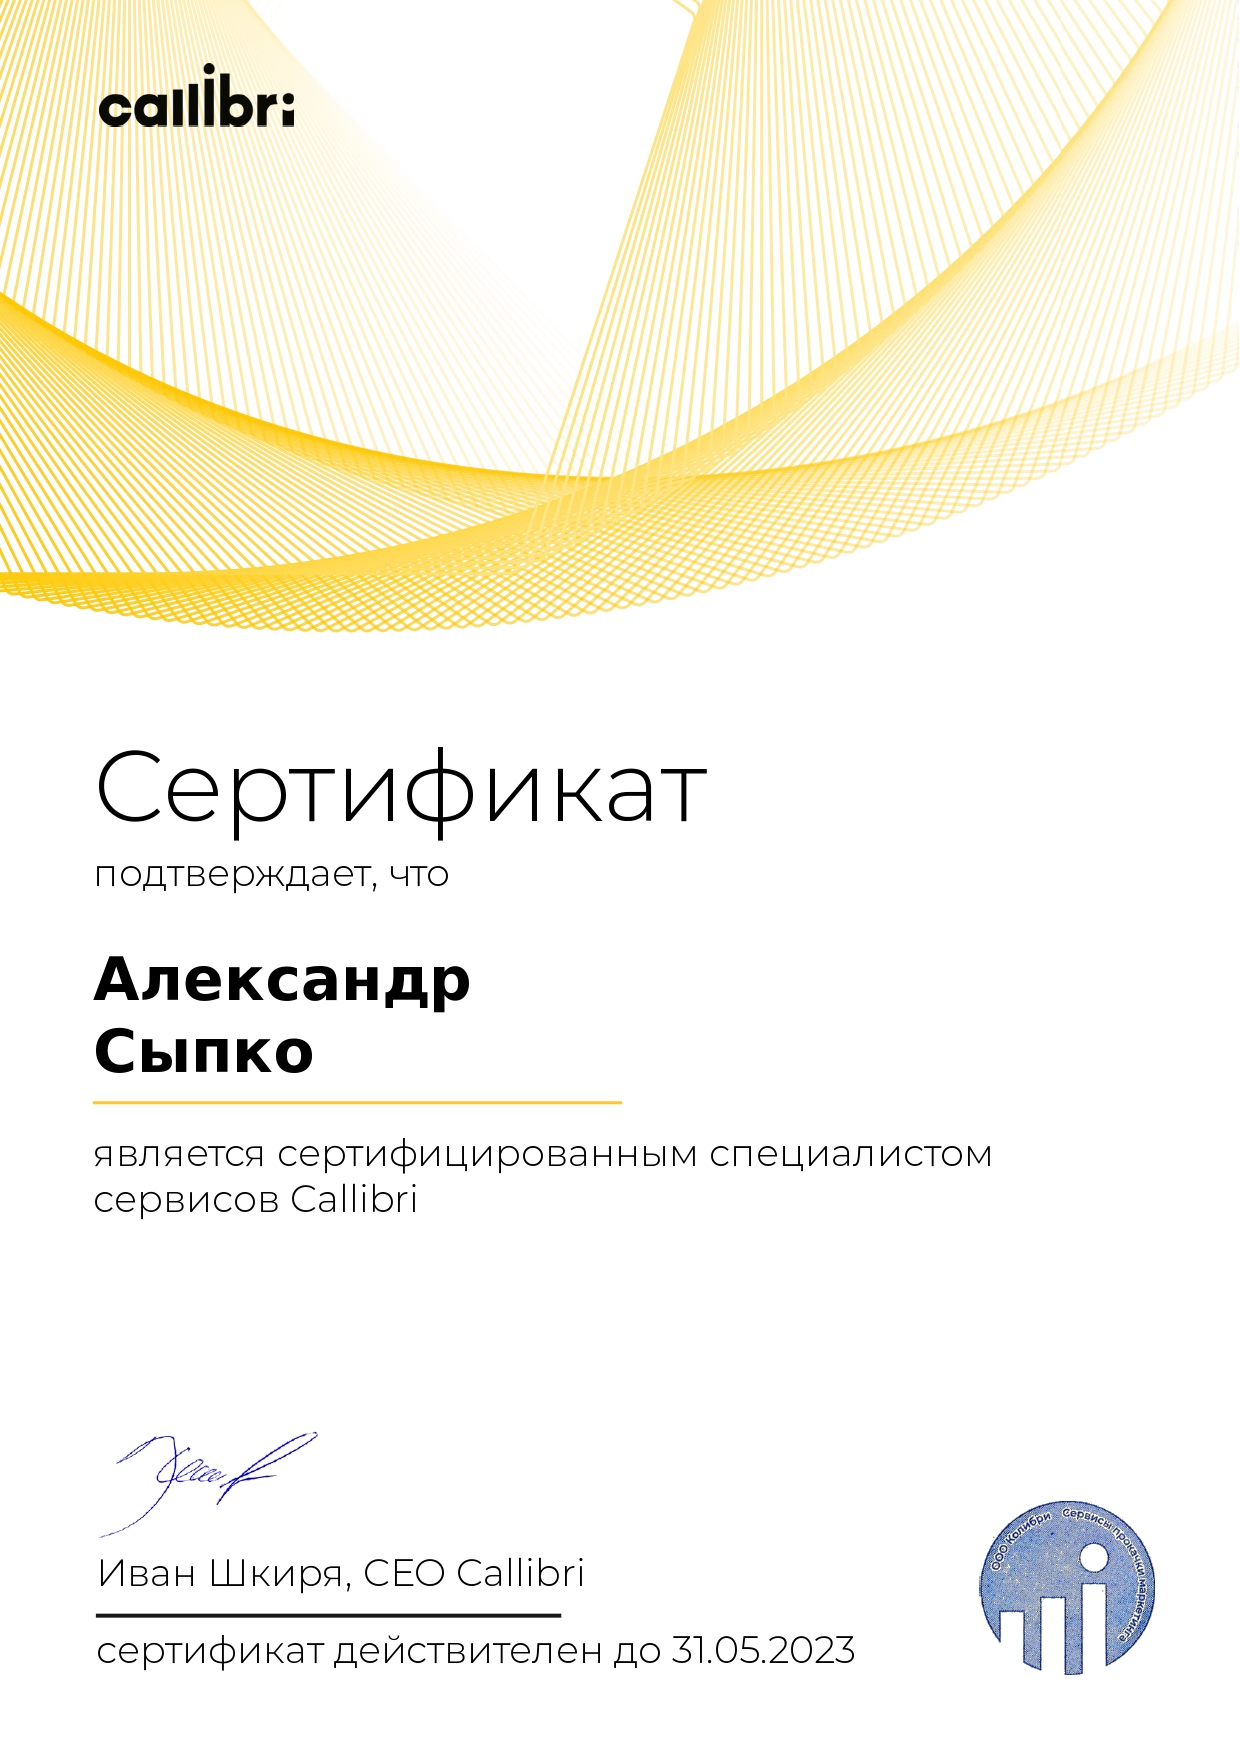 Александр Сыпко - сертифицированный партнёр Callibri 2022